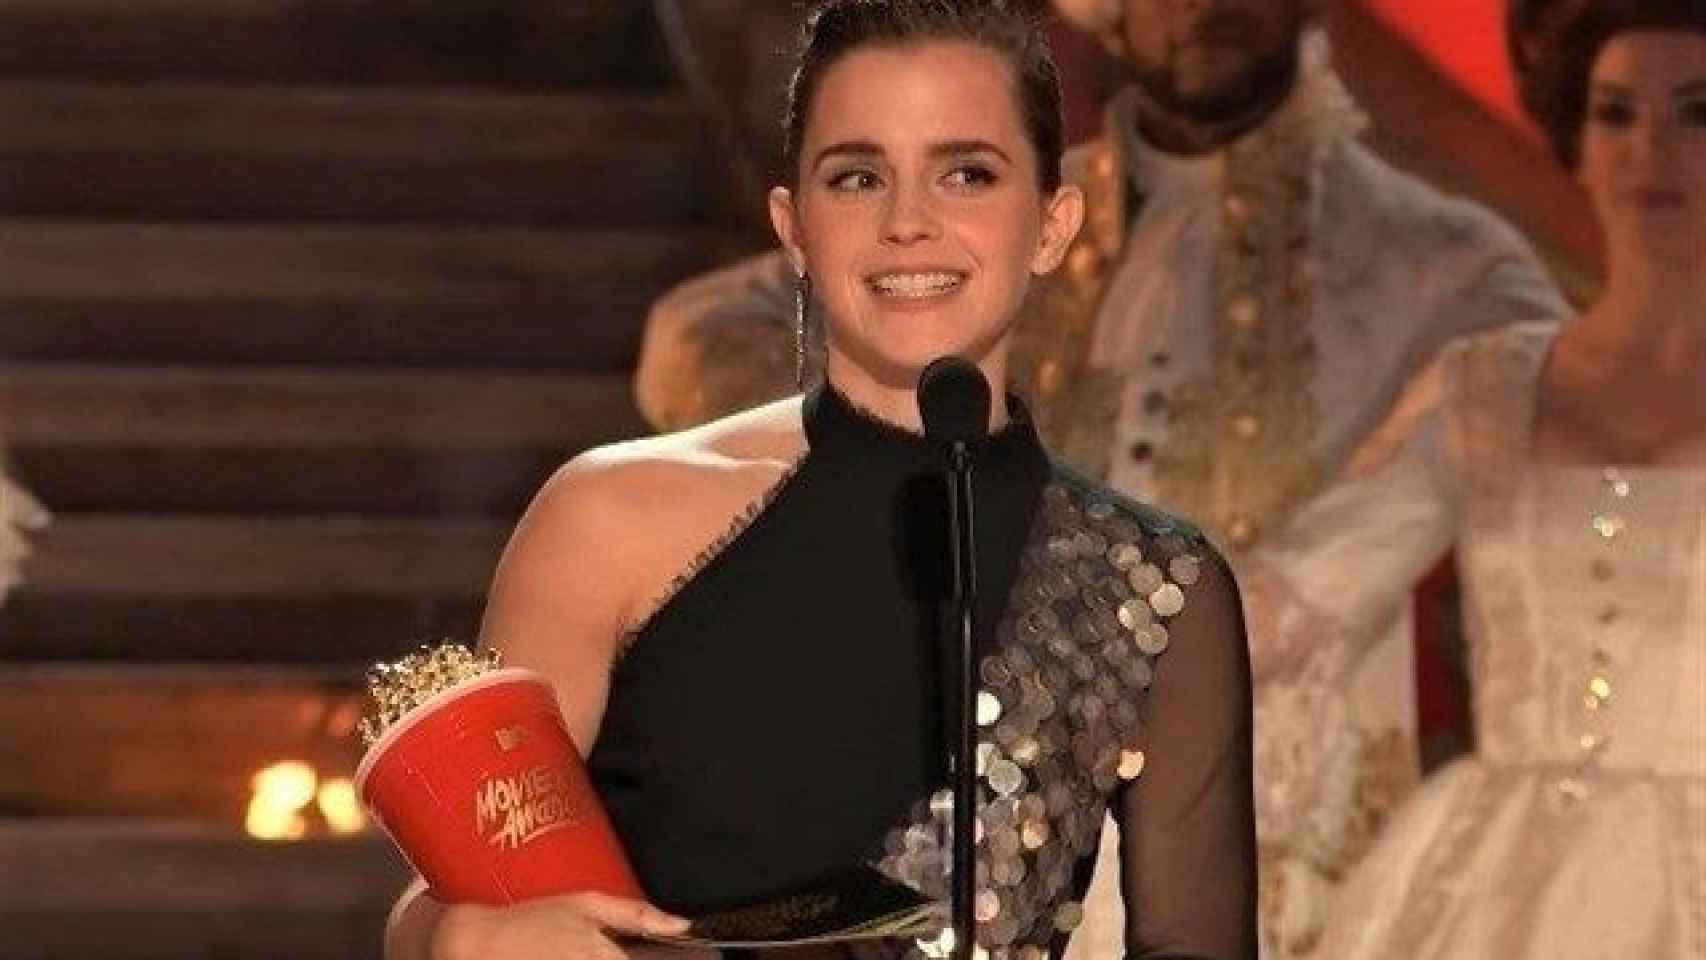 El emotivo discurso de Emma Watson en los MTV Awards